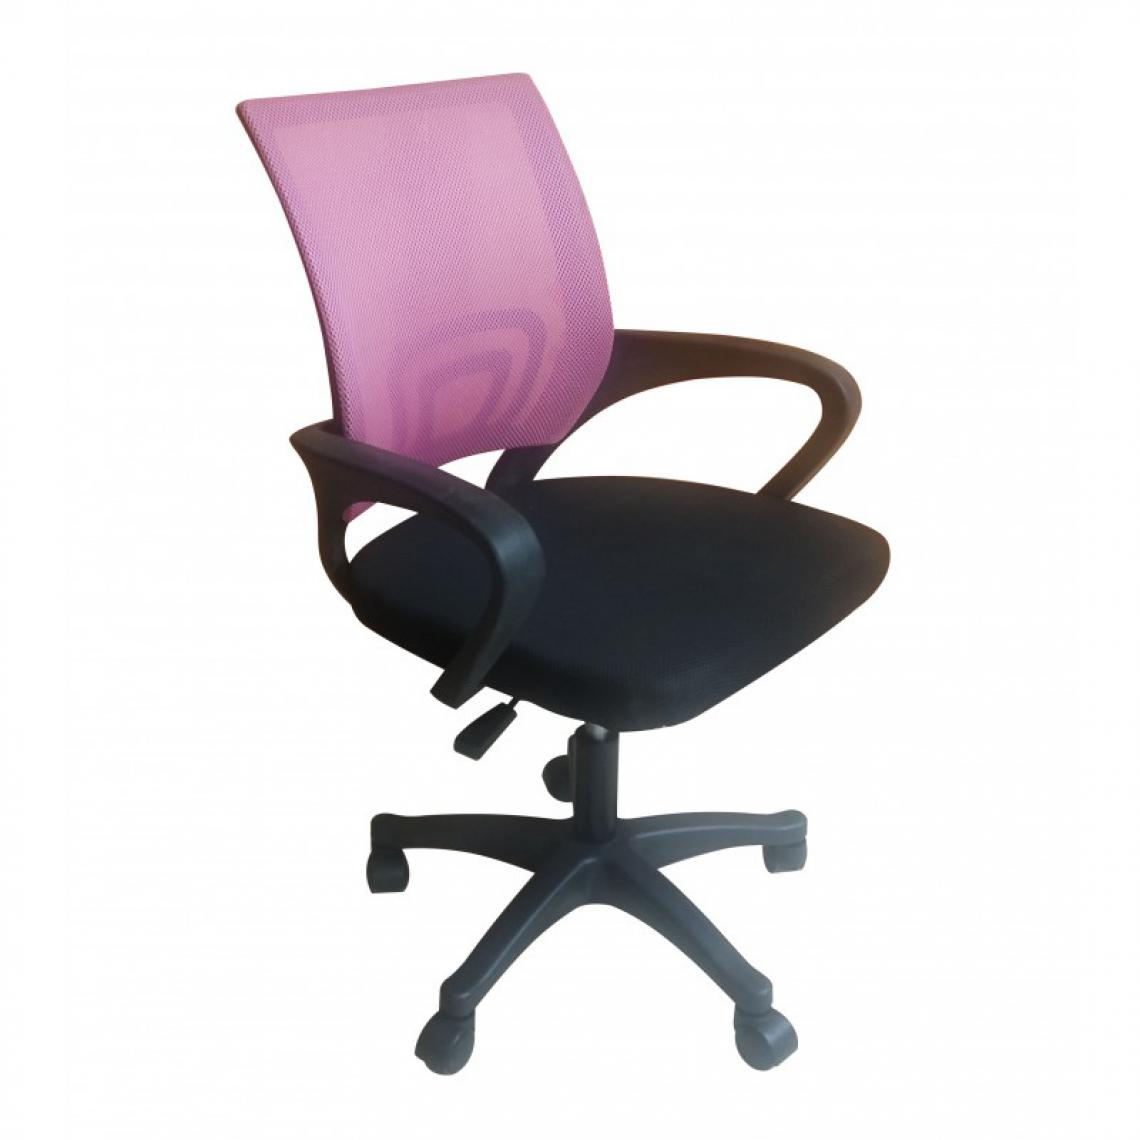 Hucoco - CARISE - Fauteuil de bureau ergonomique - Hauteur ajustable - Avec accoudoirs - Chaise de bureau pivotante - Rose - Chaises